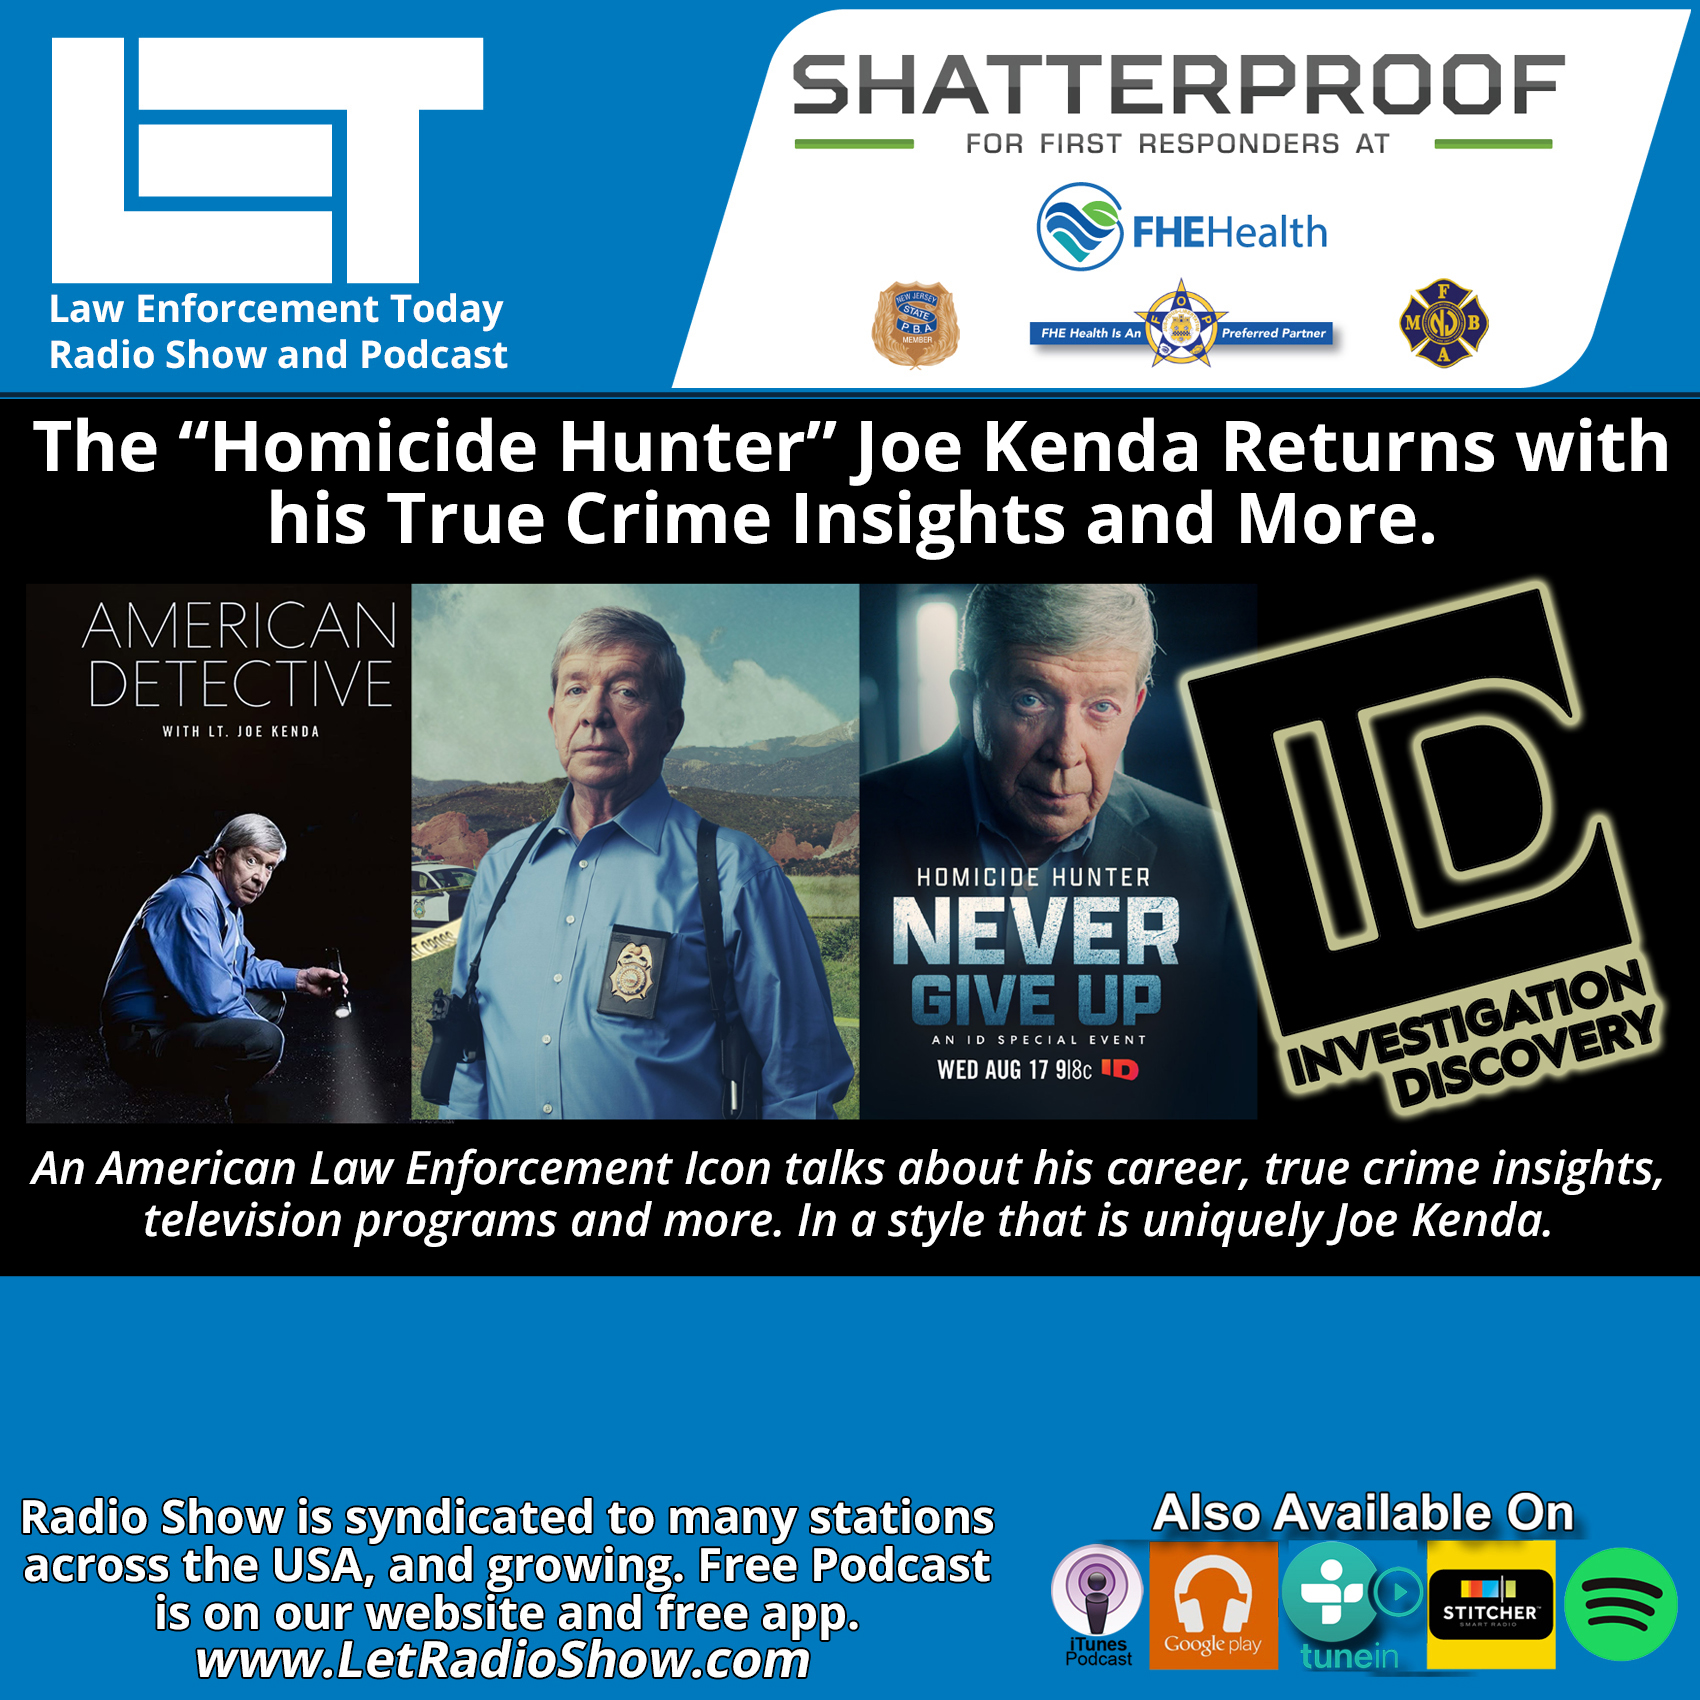 The Homicide Hunter Joe Kenda. His True Crime Insights.